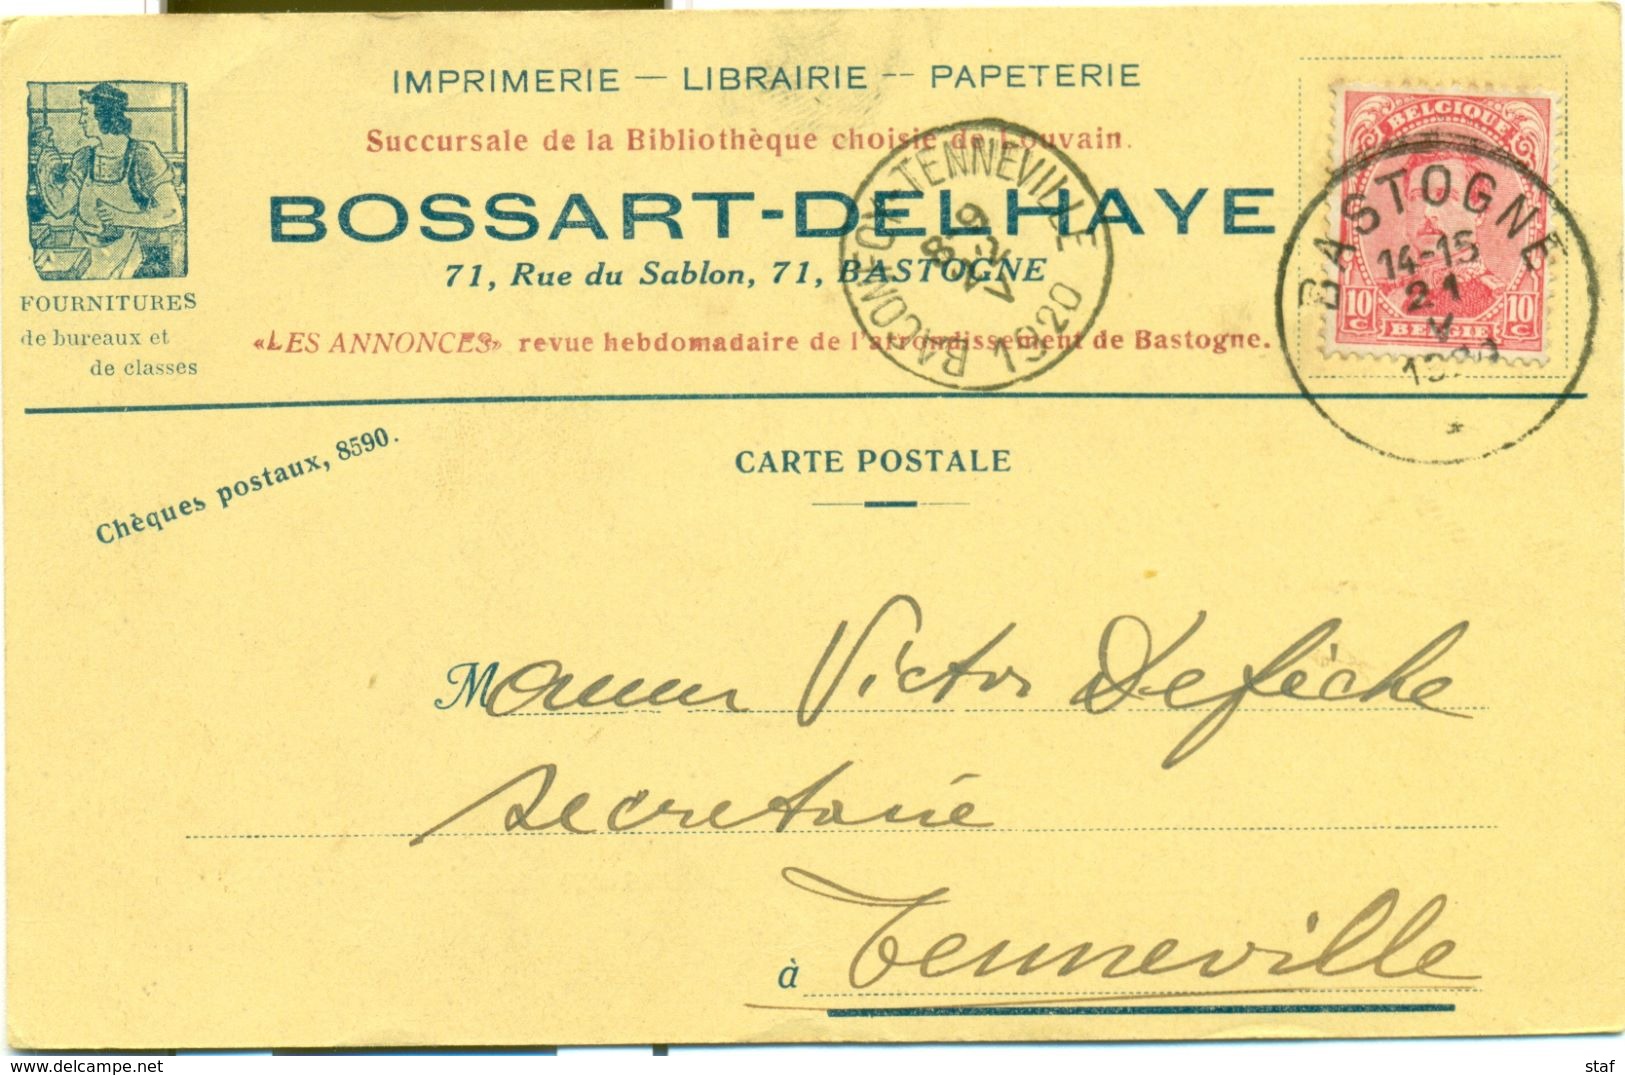 Imprimerie - Librairie - Papéterie Bossart - Delhaye à Bastogne : 1920 - Printing & Stationeries